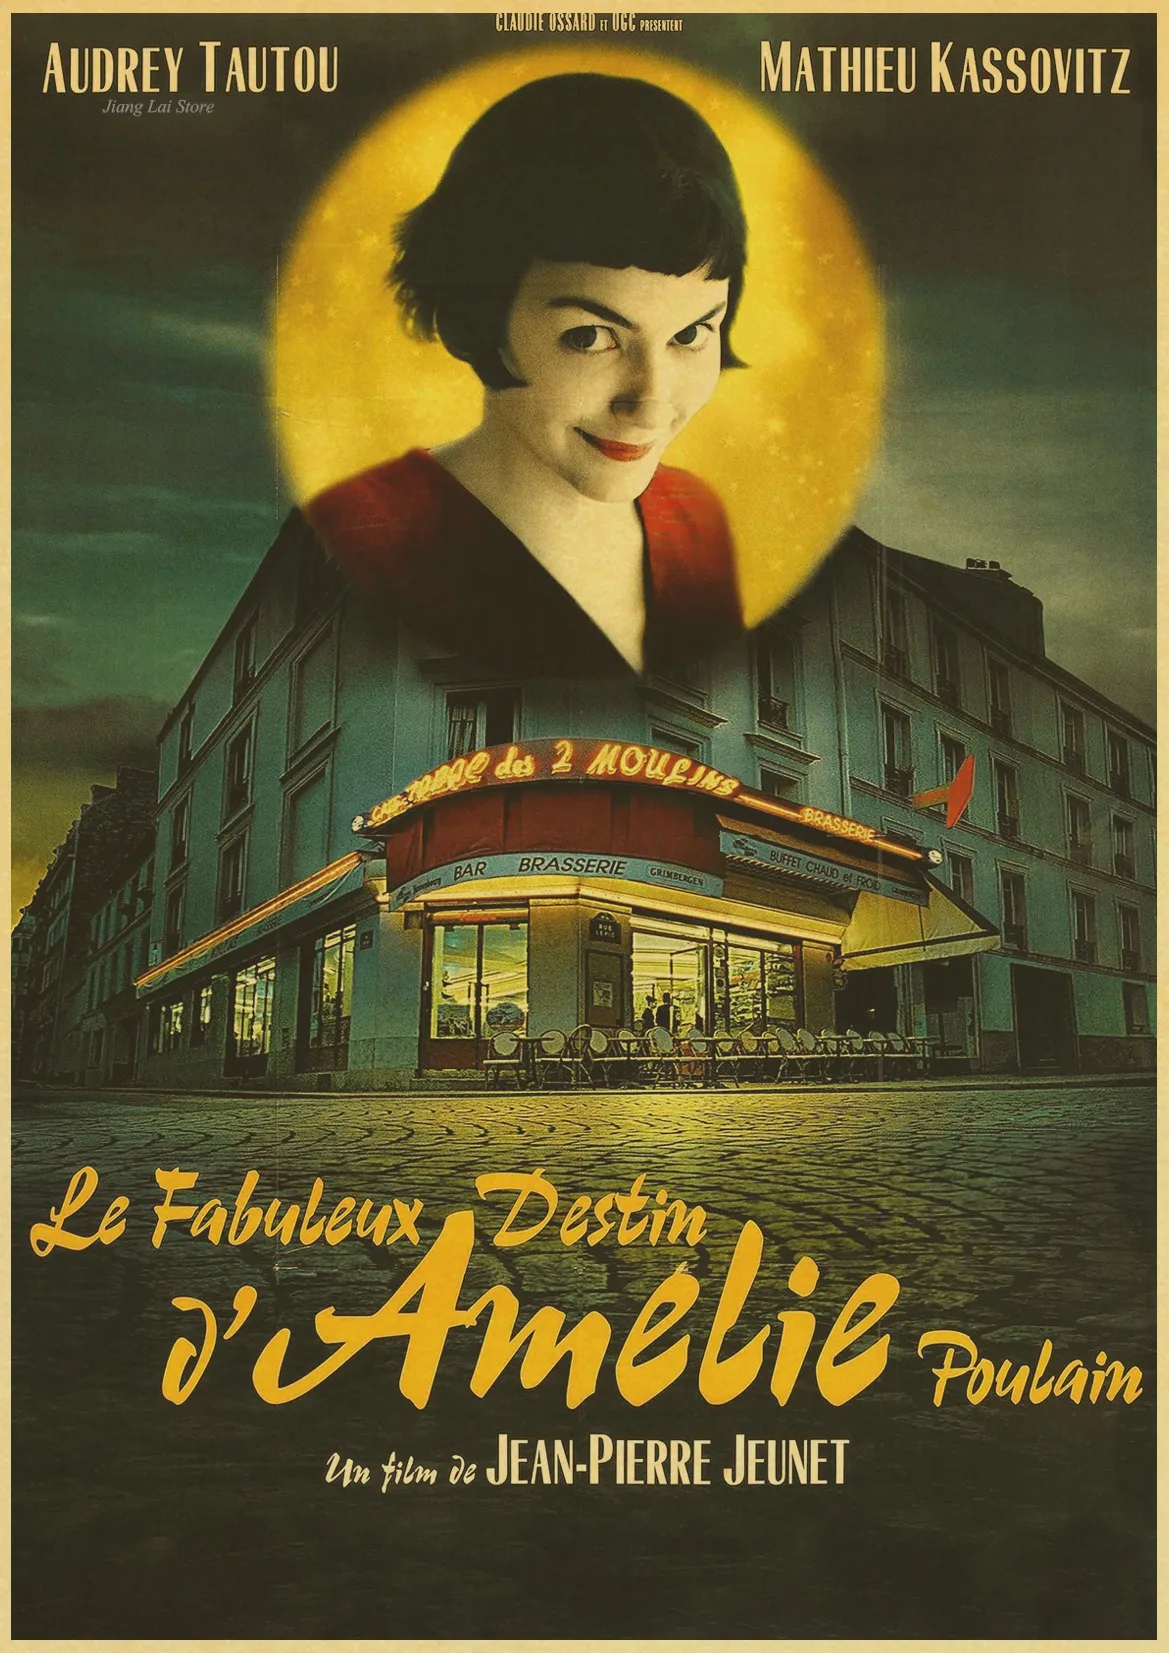 Audrey Tautou знаменитая работа Amelie винтажный бумажный плакат настенная живопись украшение дома 42X30 см 30X21 см